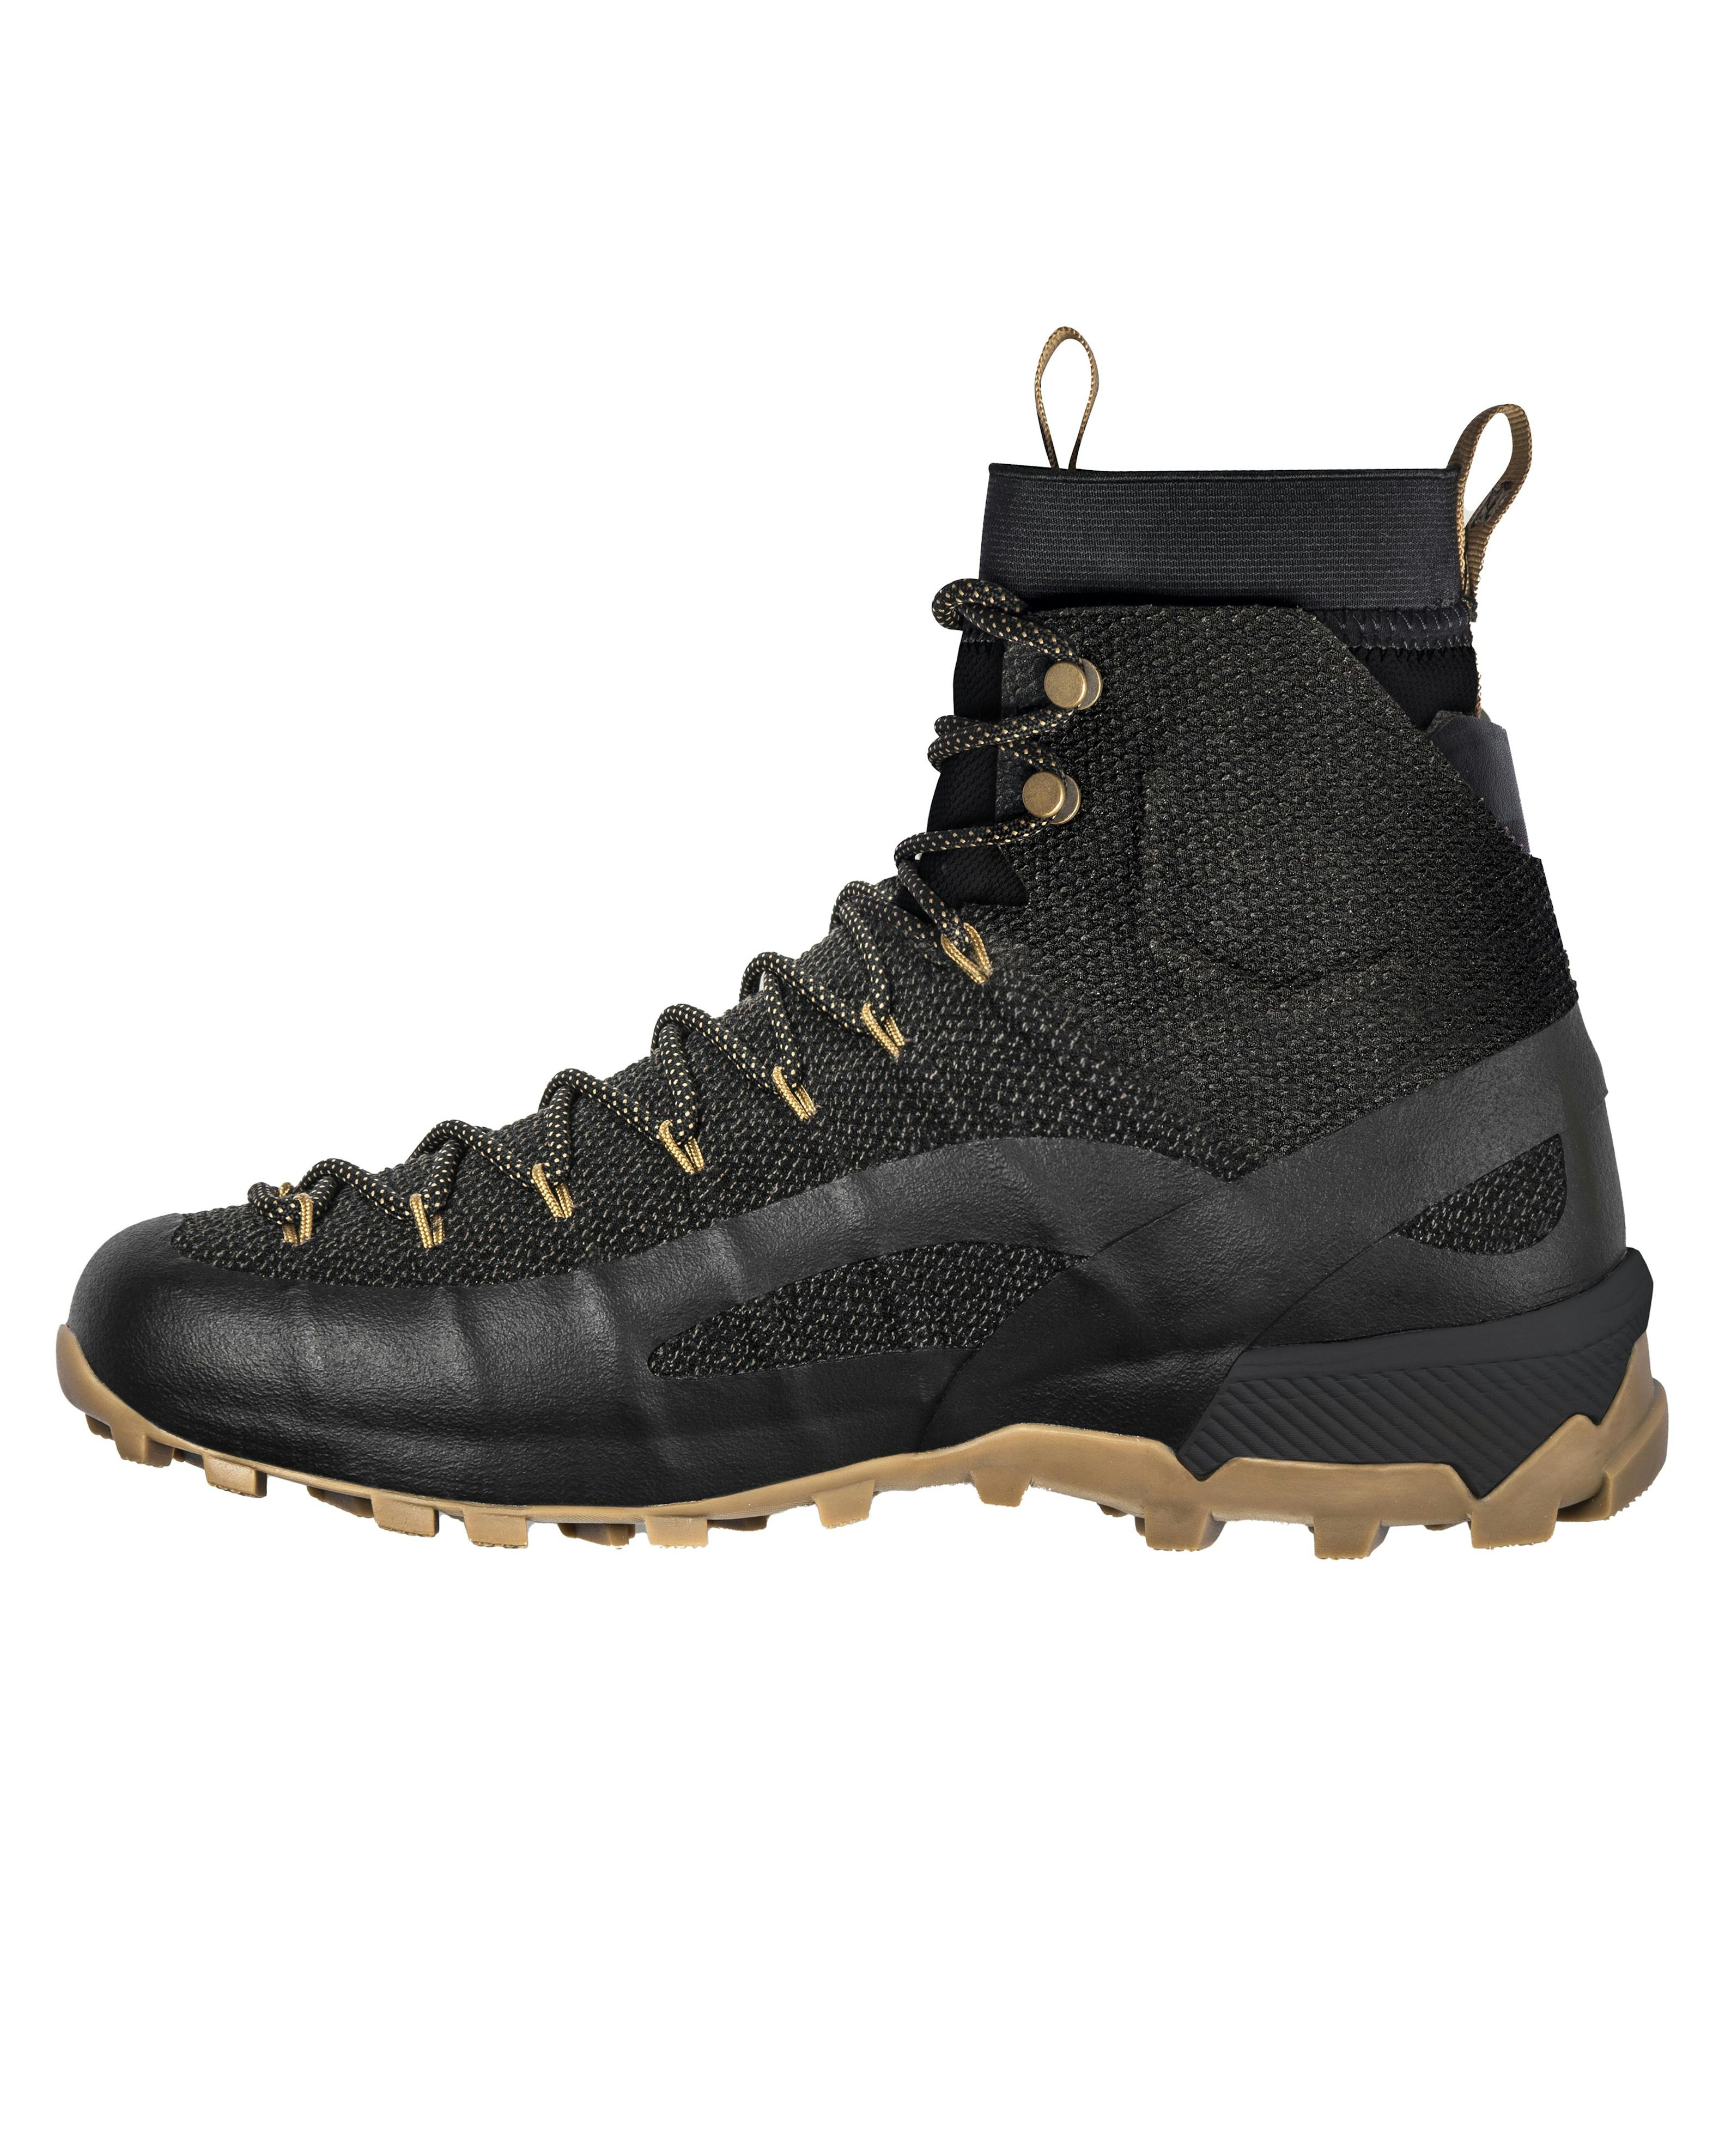 Naglev Combat Waterproof Boot - Black | Hiking Boots | Huckberry